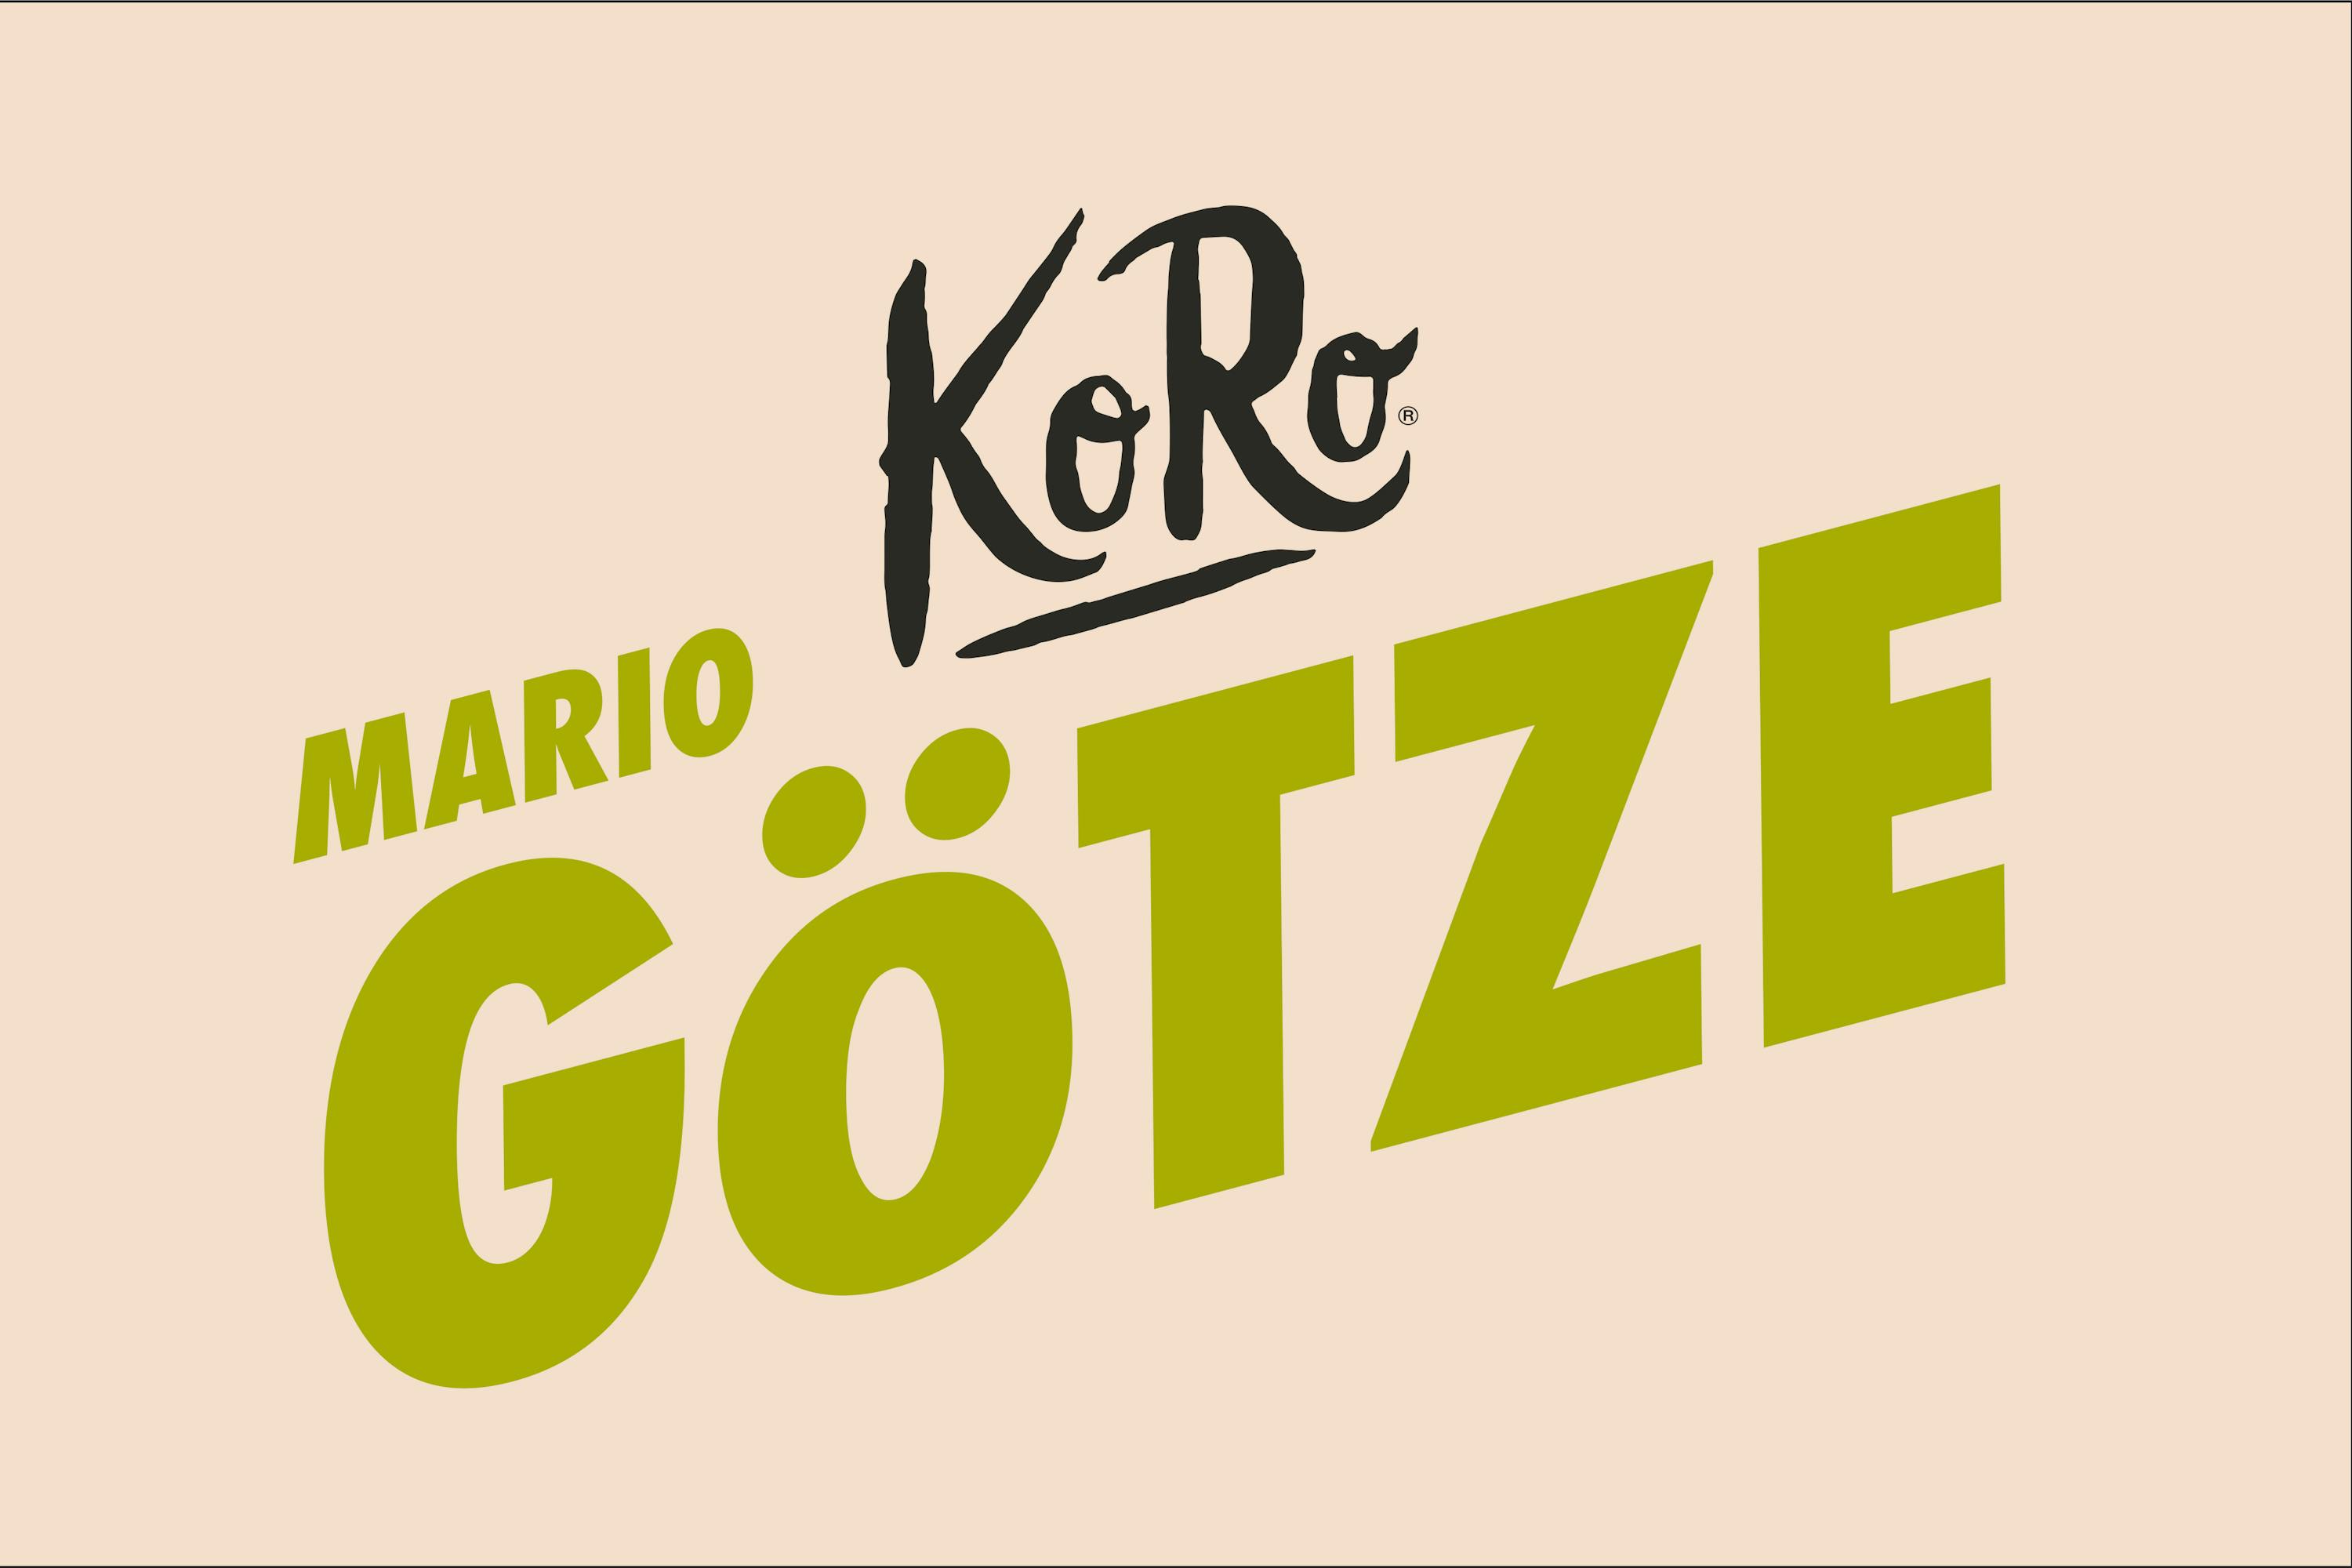 KoRo x Mario Götze: This pistachio slice kicks differently